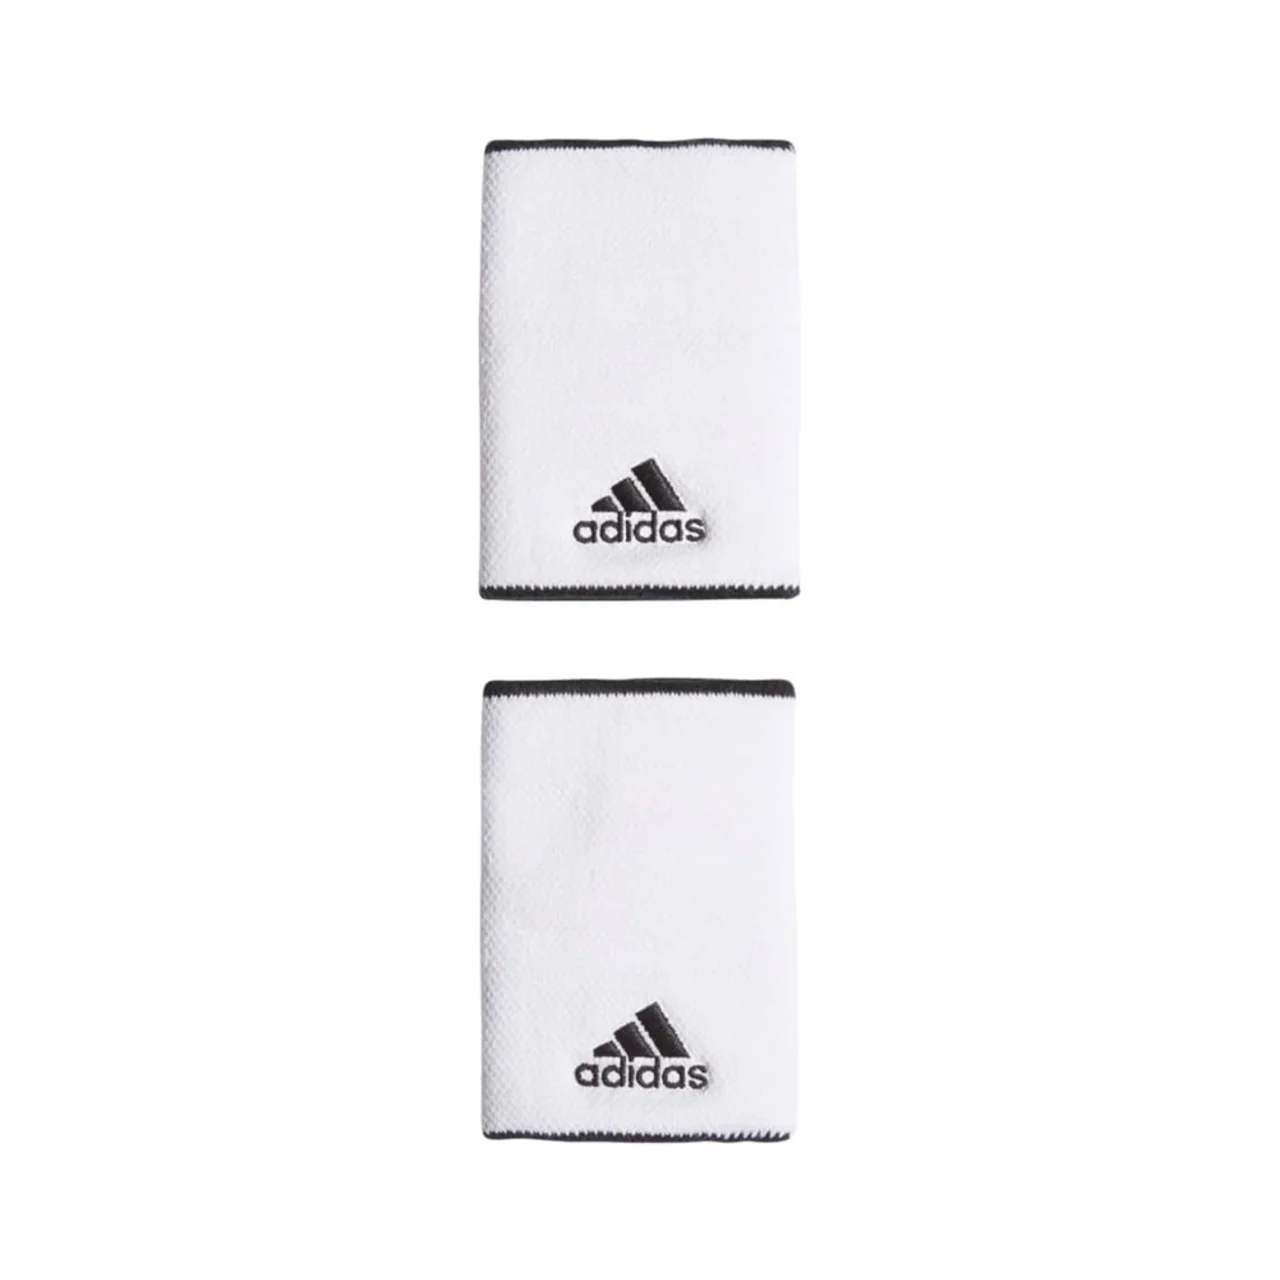 Adidas Wristband Large White